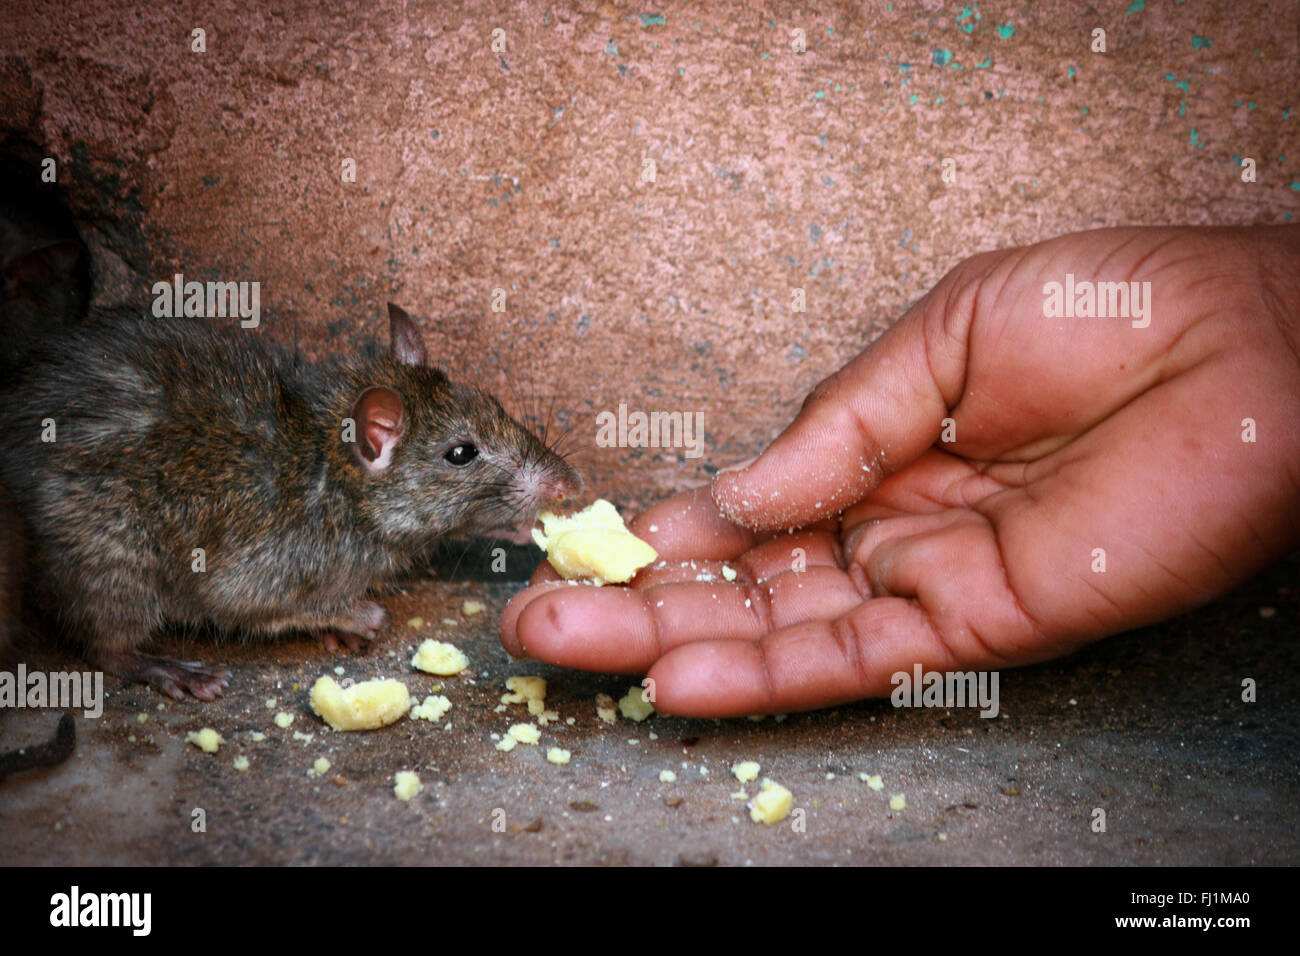 Pèlerins hindous se nourrir les rats en temple Karni Mata, Deshnok, Inde Banque D'Images